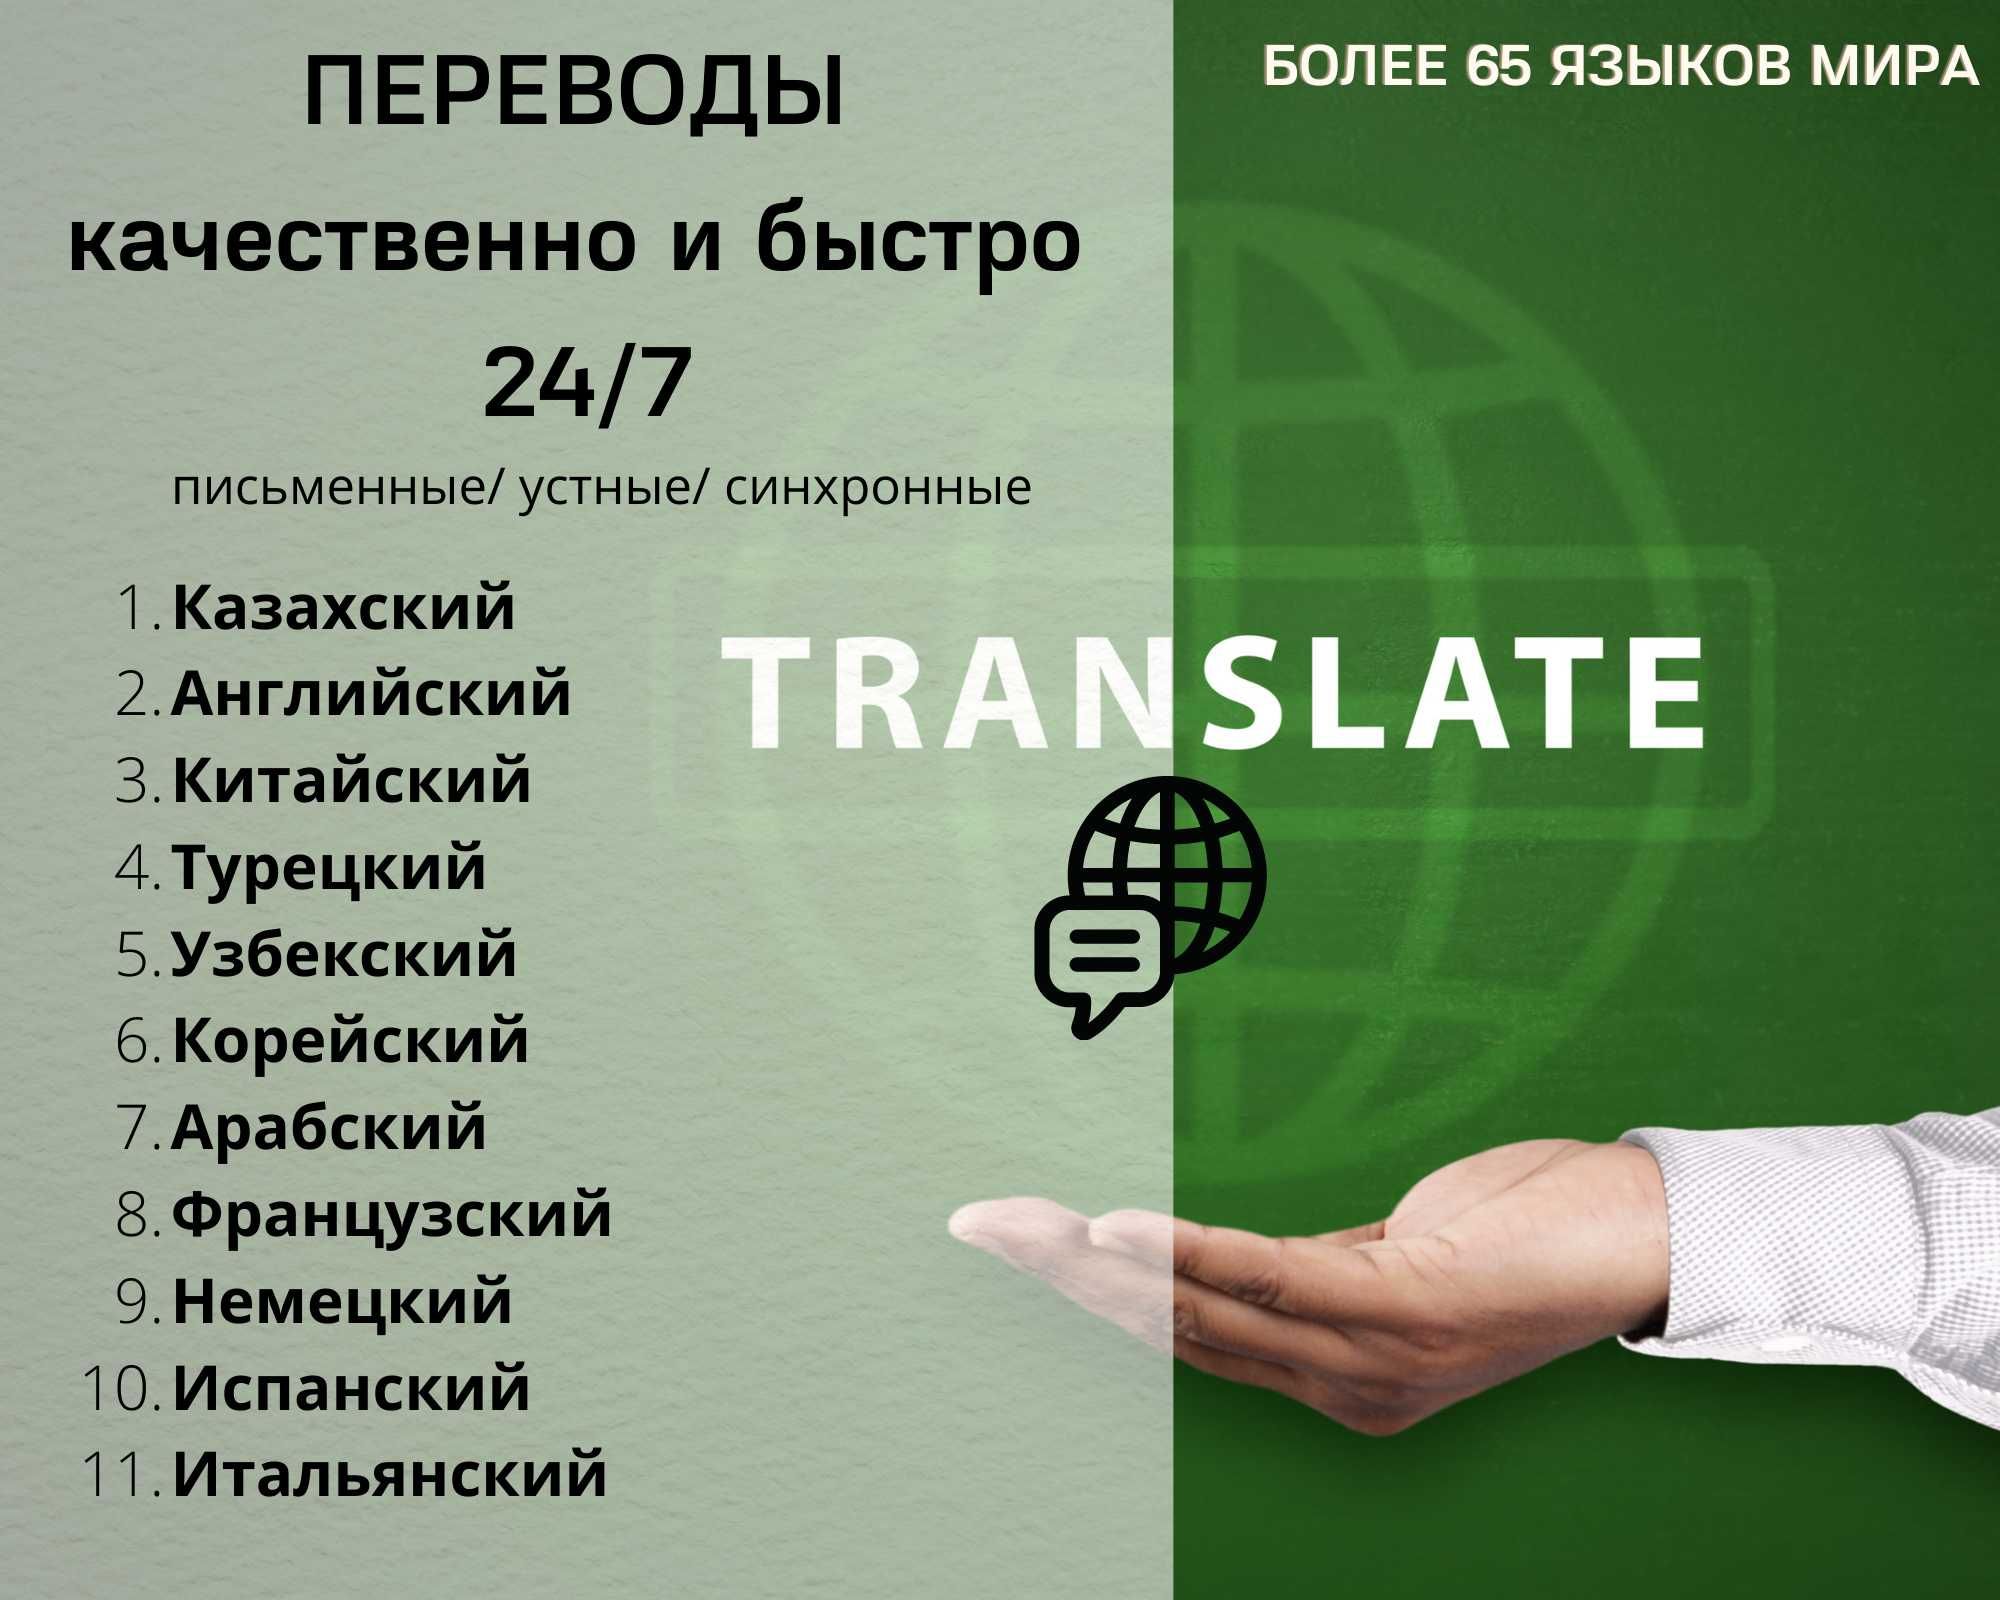 Переводы на более 65 языков мира! Нотариальный перевод.